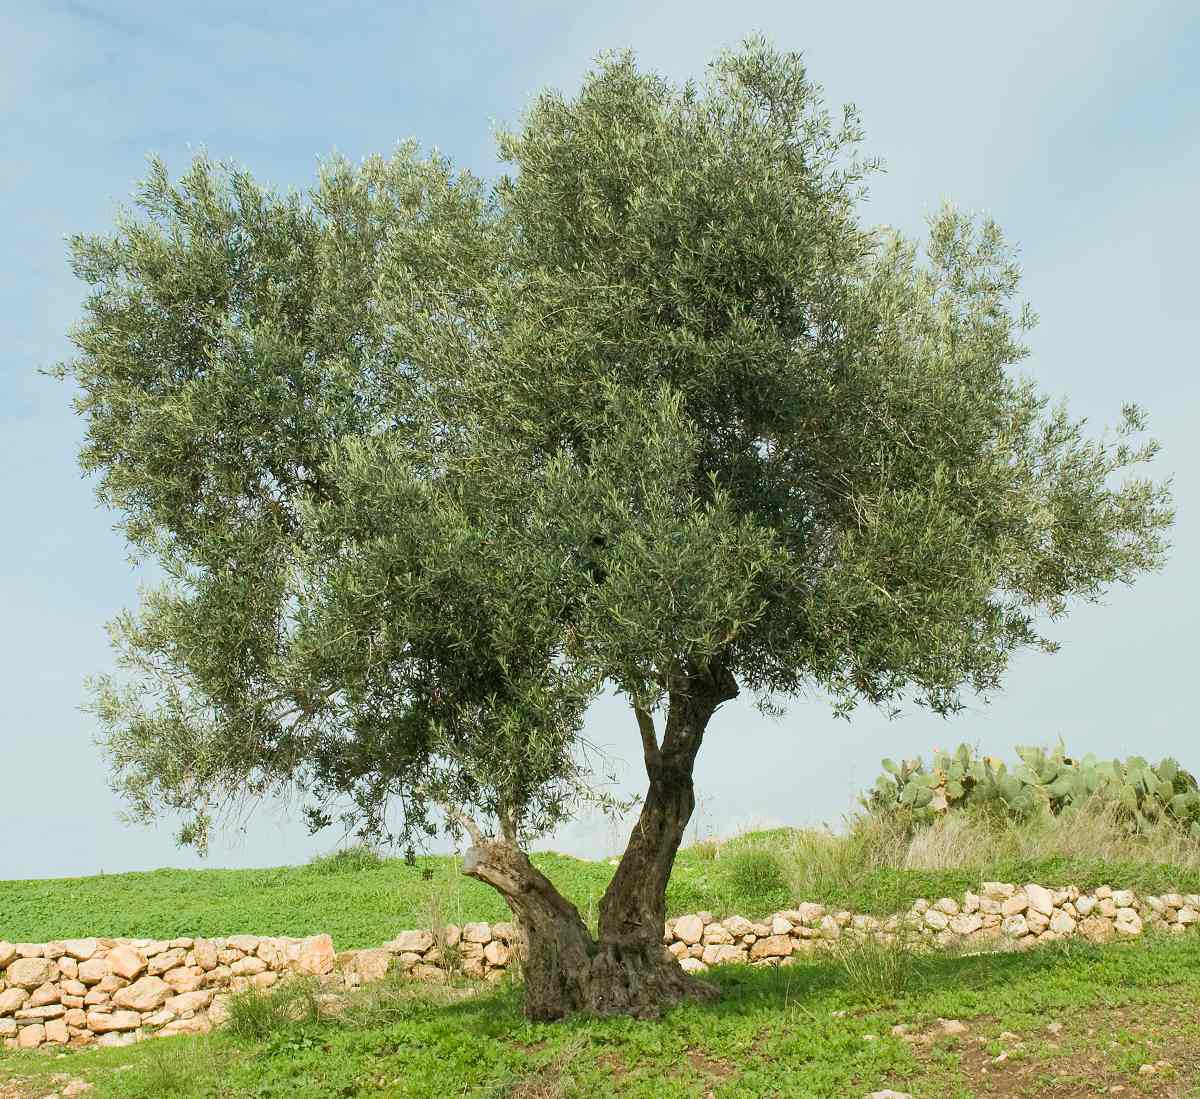 Comment savoir si un olivier est mort